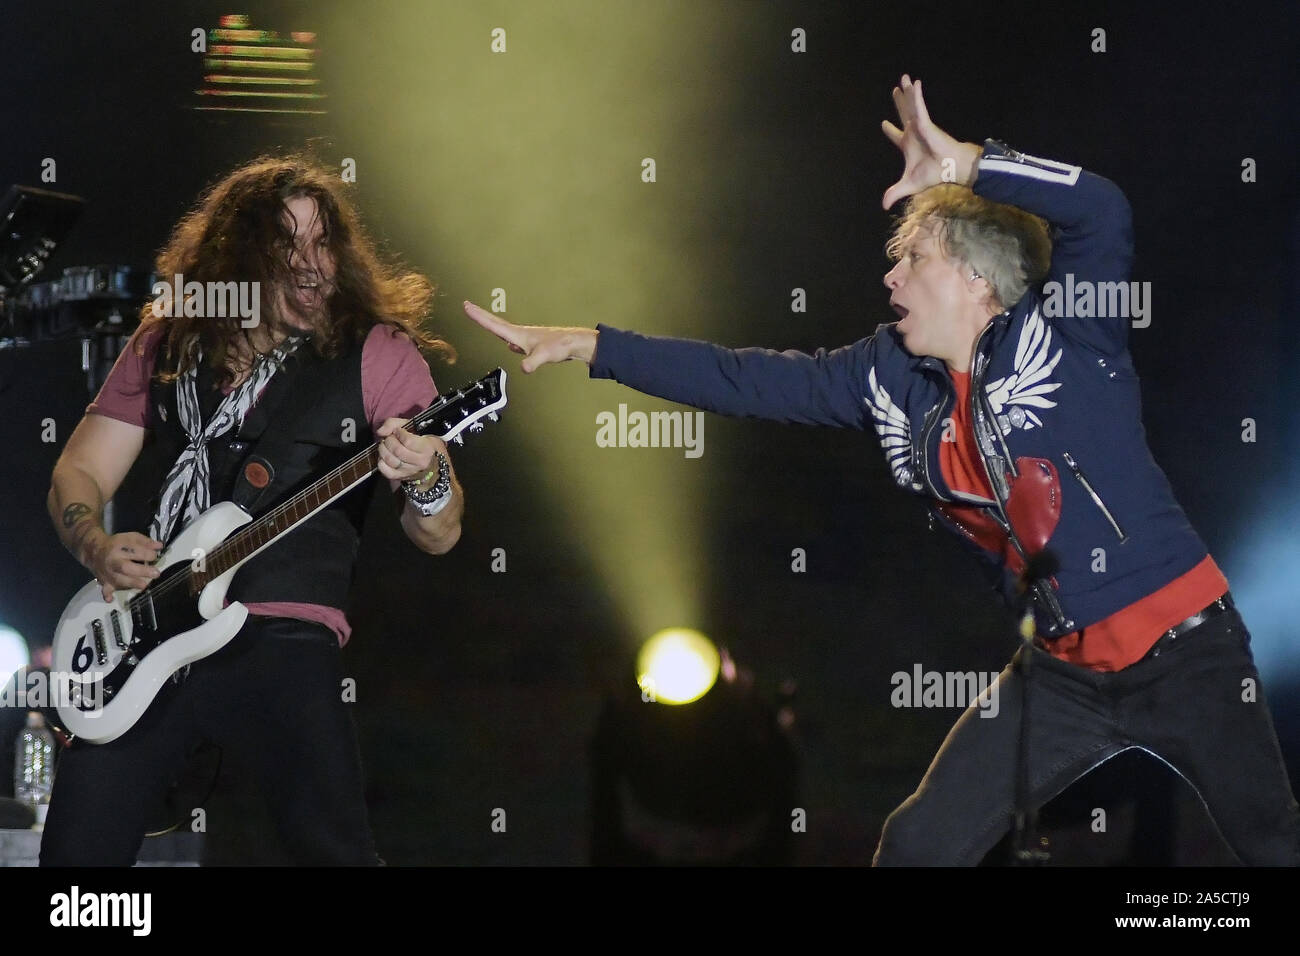 Rio de Janeiro, September 30, 2019. Singer Jon Bon Jovi and guitarist Phil X of the band Bon Jovi, during a concert at Rock in Rio 2019 in Rio de Jane Stock Photo